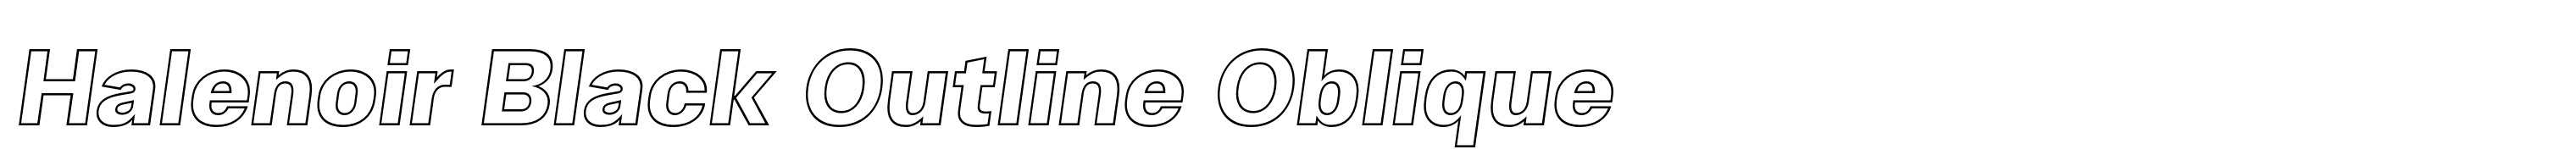 Halenoir Black Outline Oblique